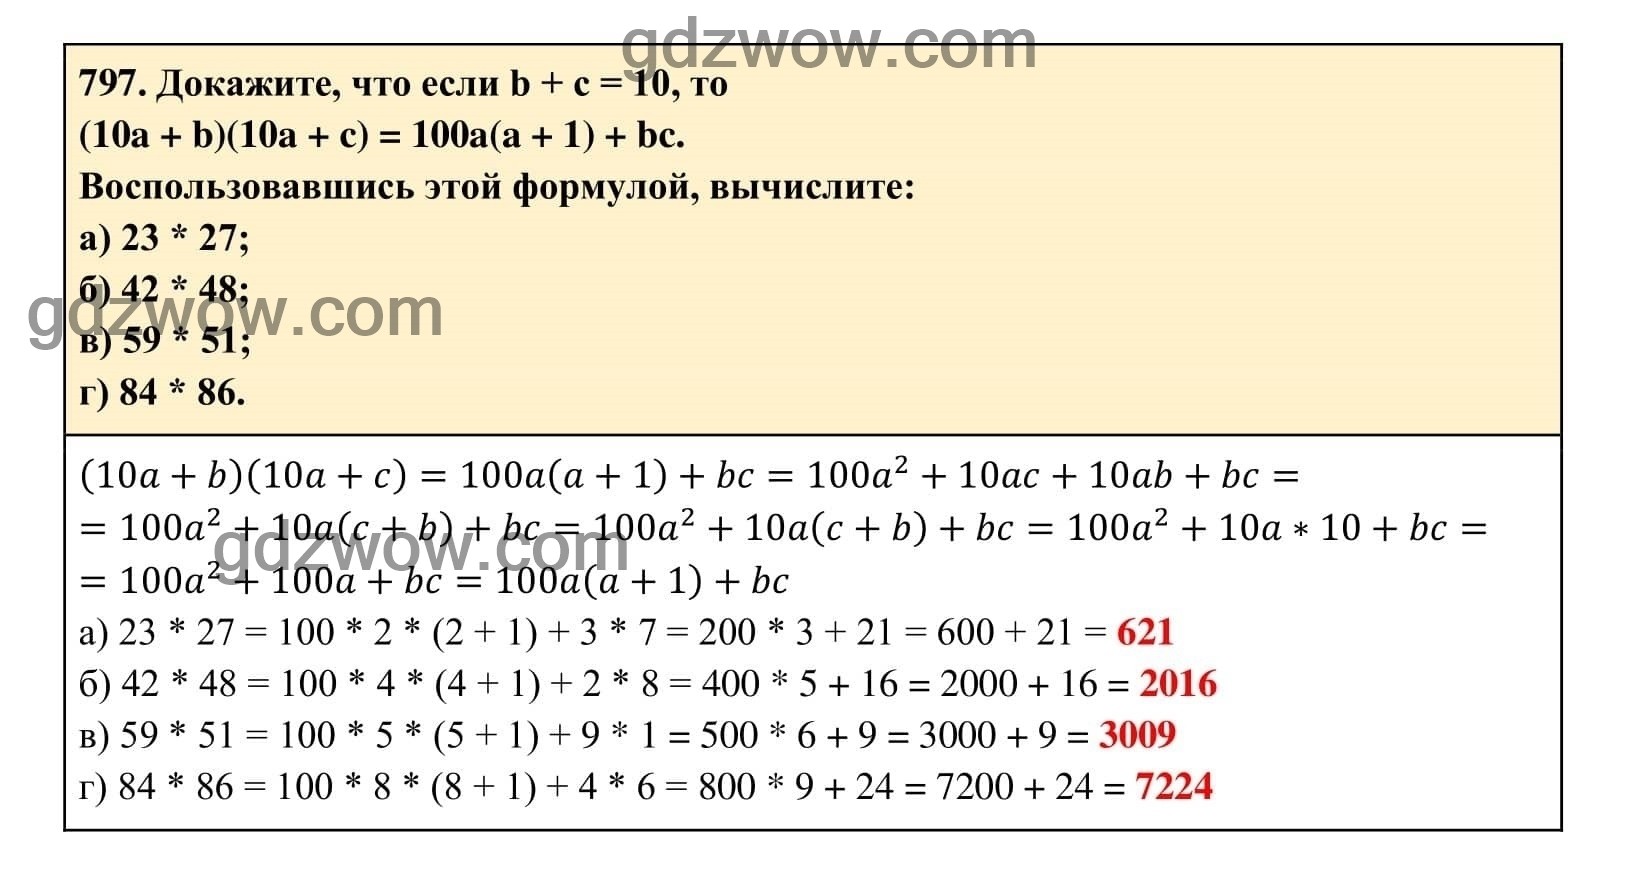 Упражнение 797 - ГДЗ по Алгебре 7 класс Учебник Макарычев (решебник) - GDZwow